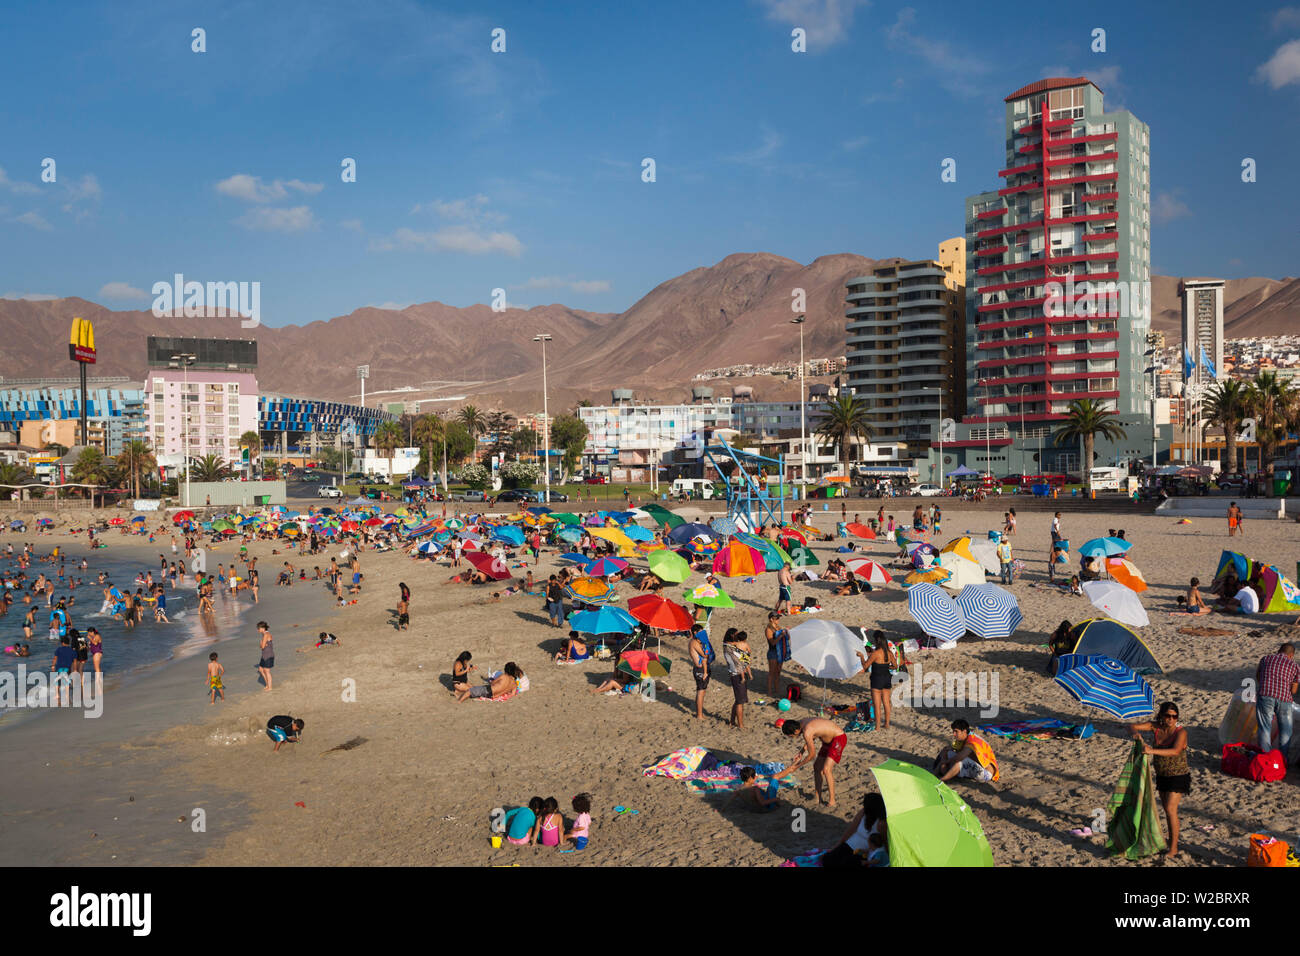 Chile, Antofagasta, Balneario Municipal beach, Stock Photo